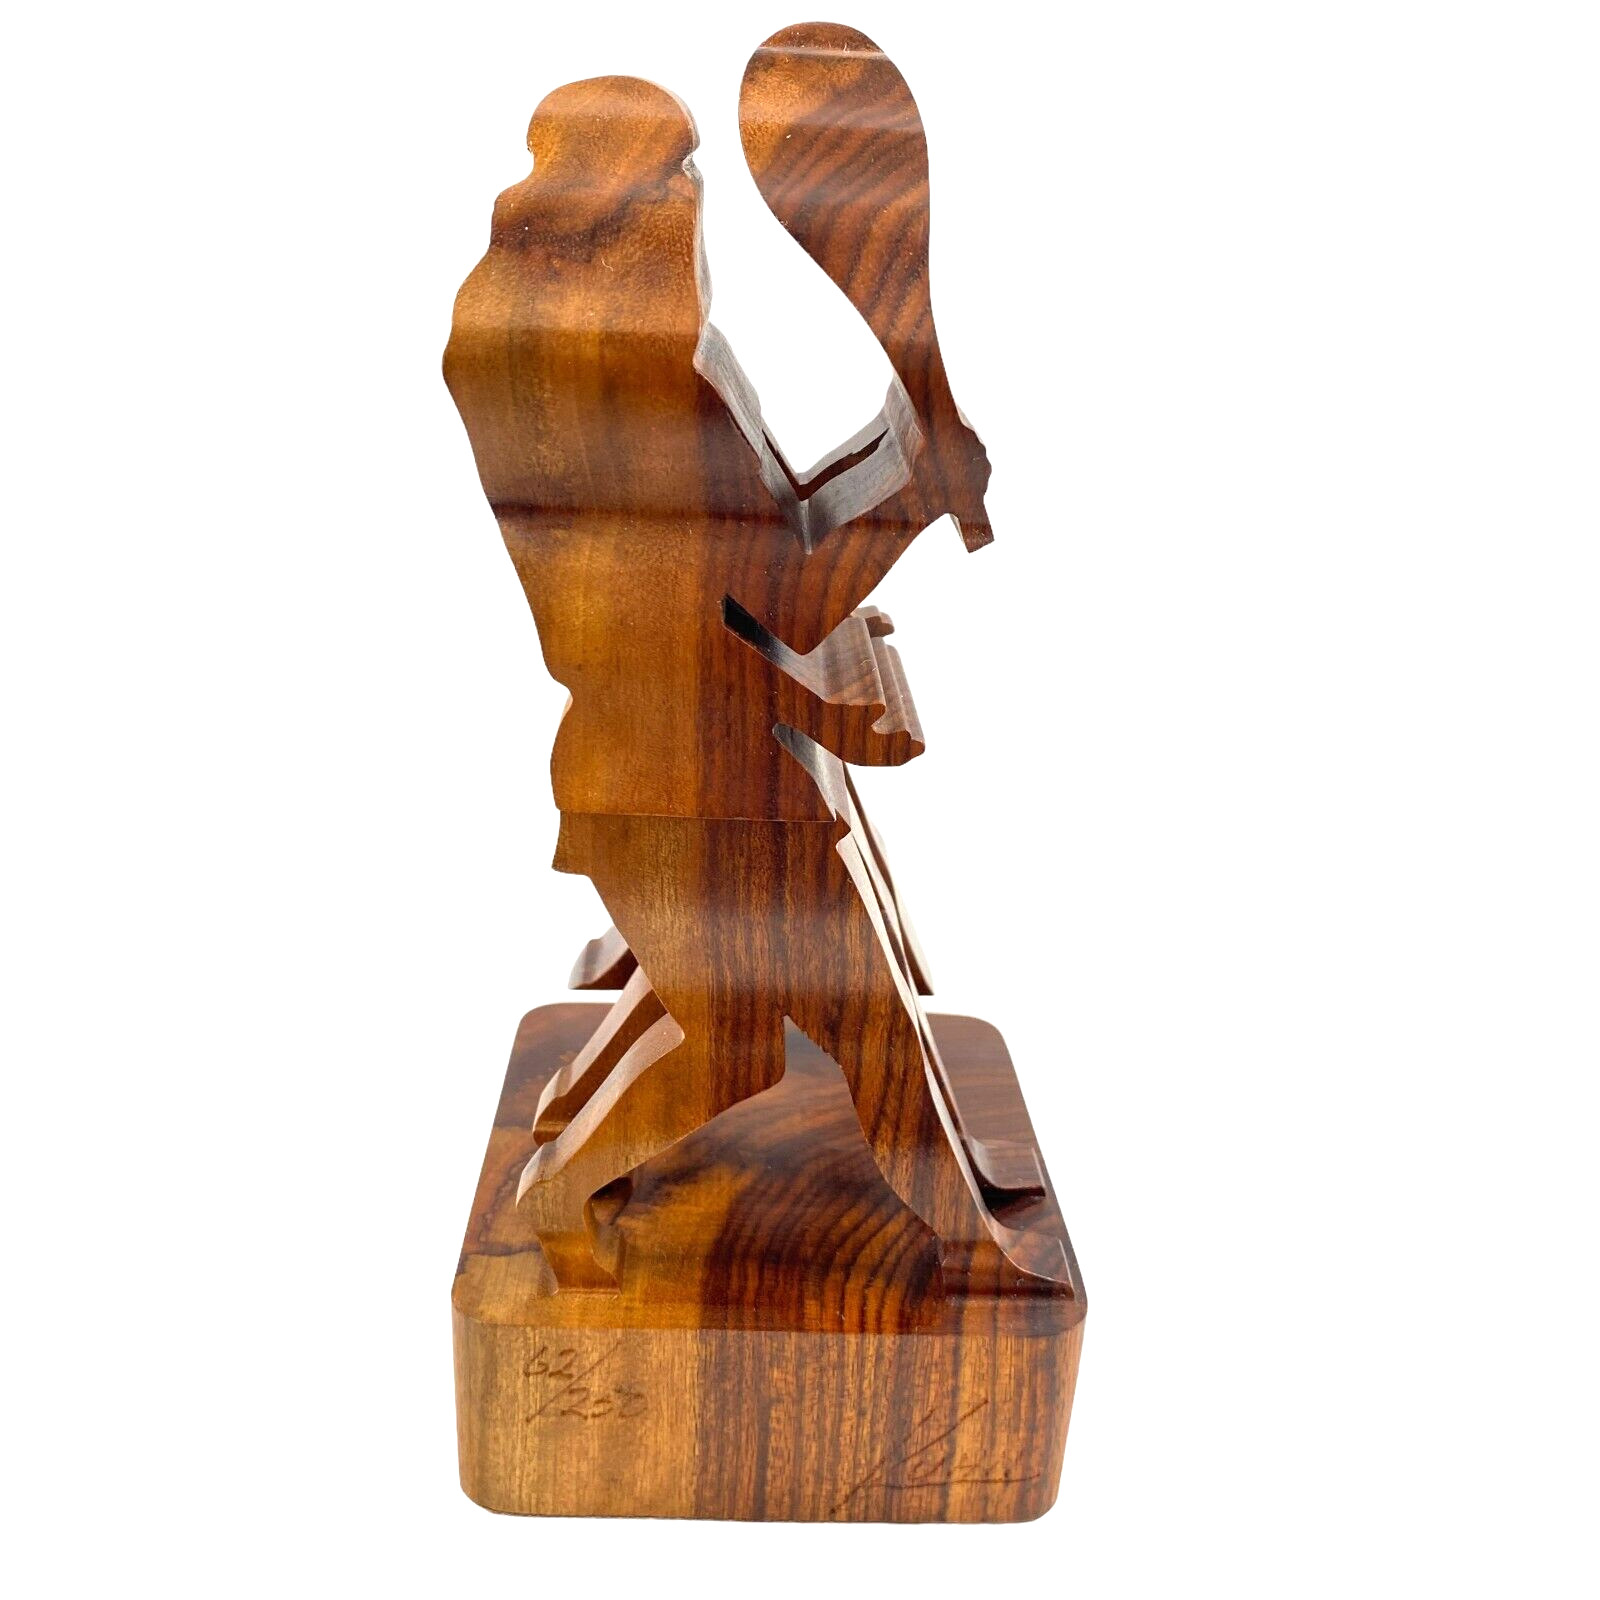 Signed Guillermo Kuhn Sanchez 3d Tennis Art Wood Sculpture 62/250 Vintage